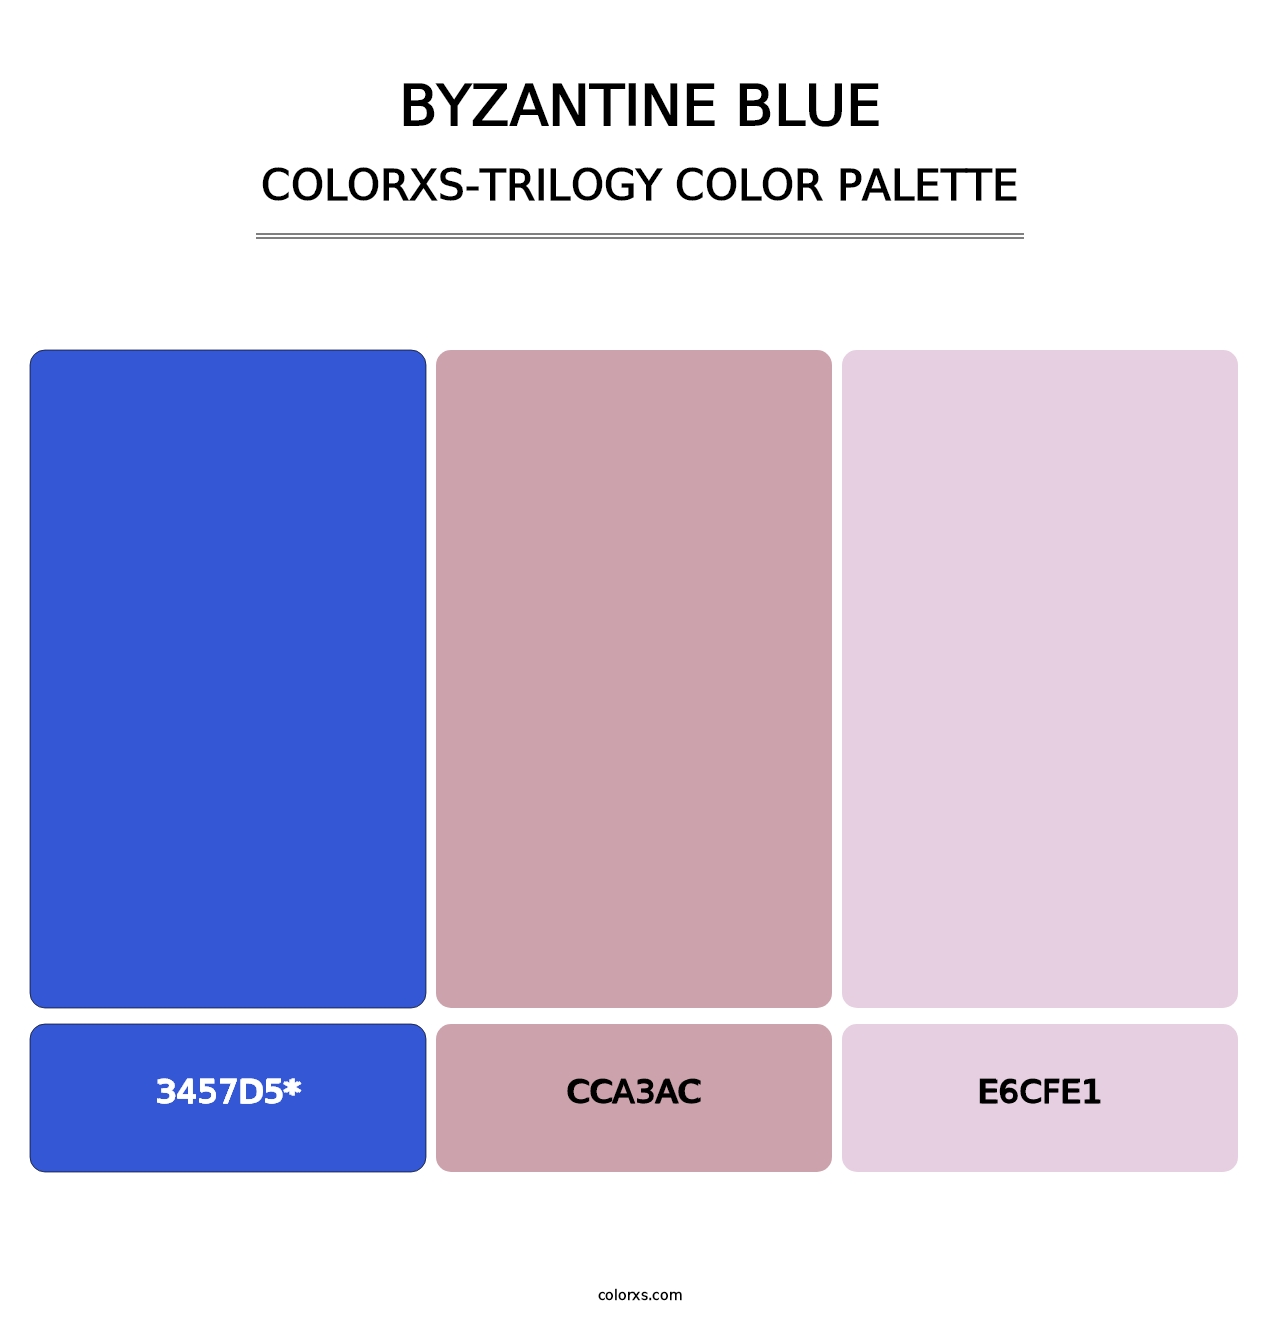 Byzantine Blue - Colorxs Trilogy Palette